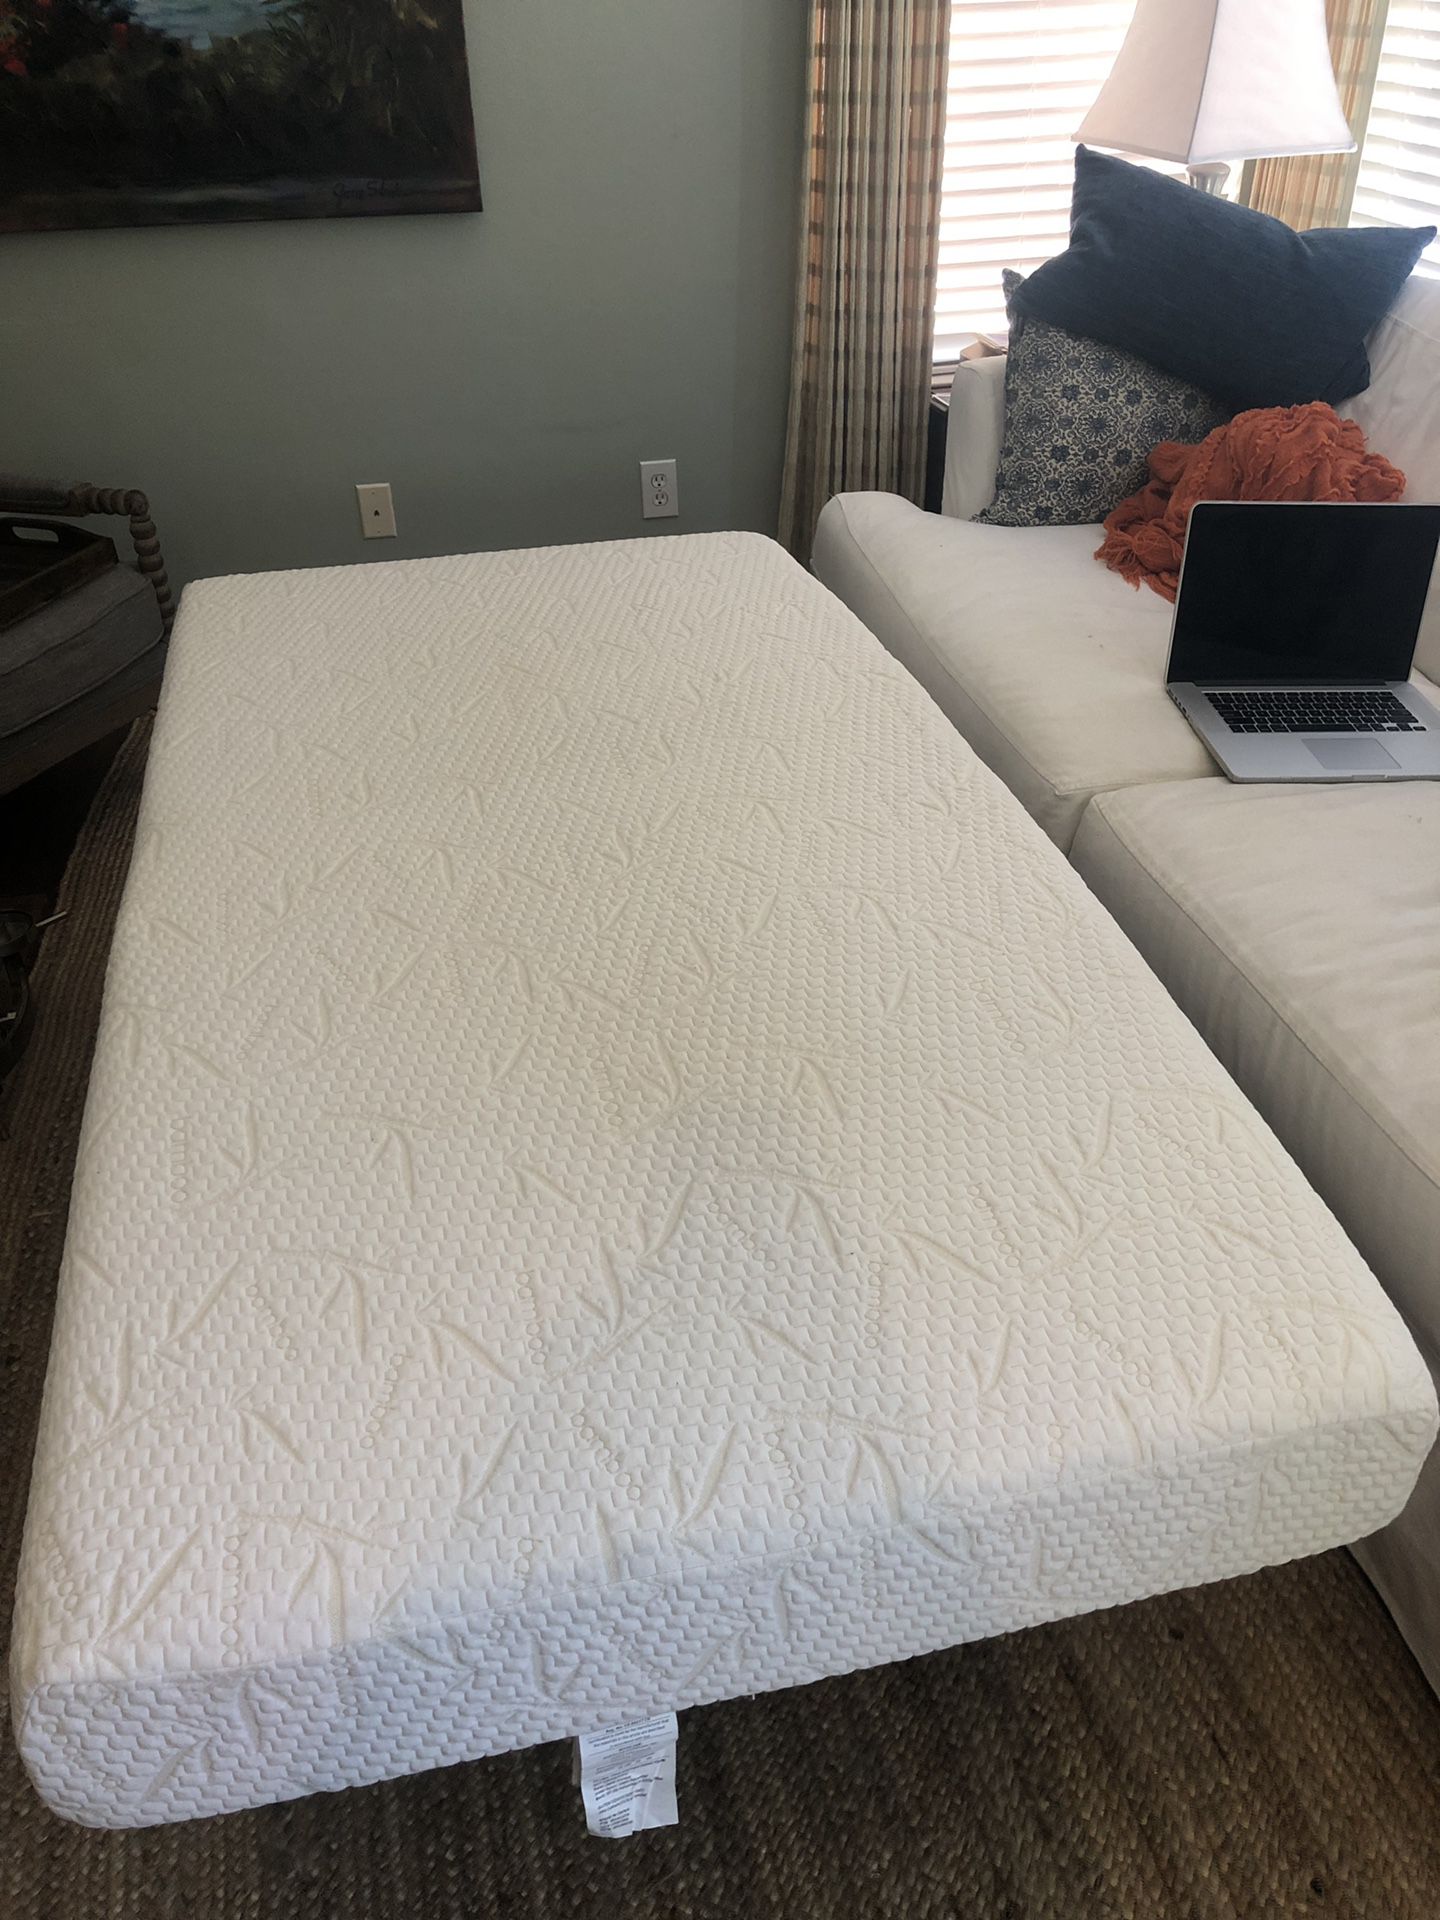 Twin memory foam mattress - clean